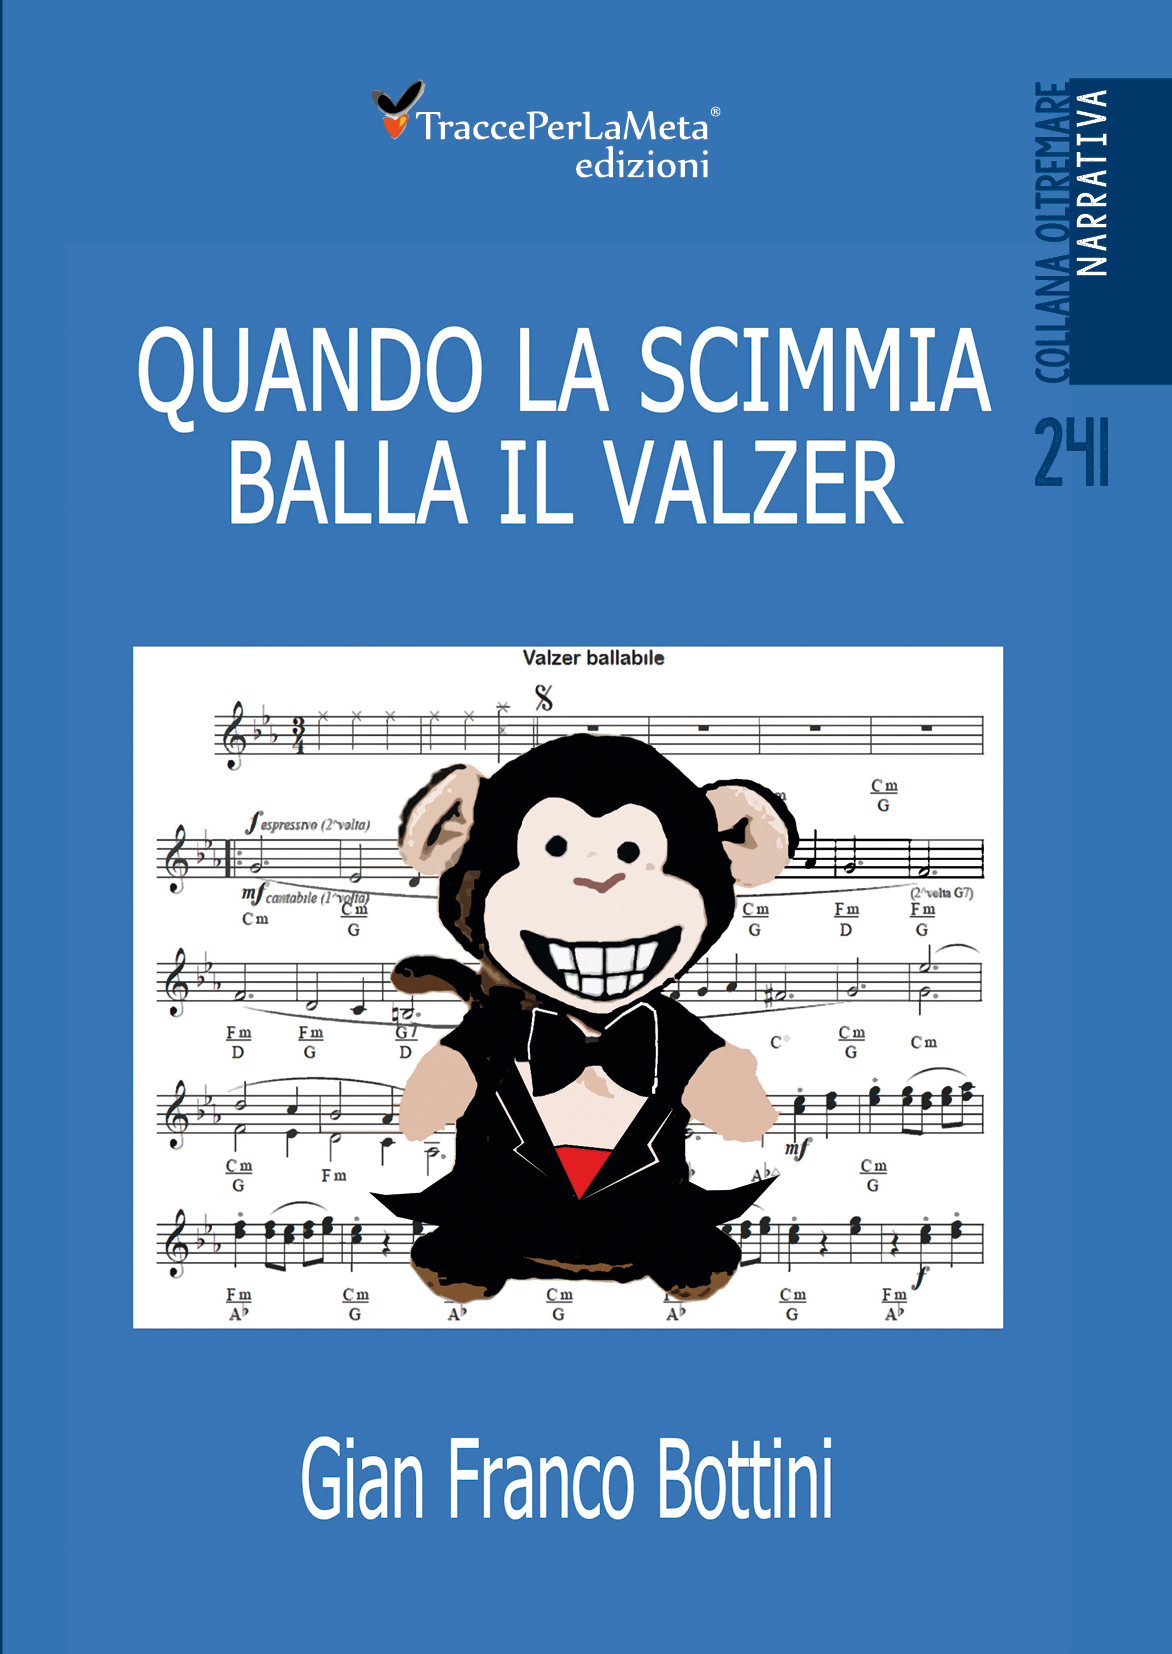 29.5.2019 – Presentazione del libro “QUANDO LA SCIMMIA BALLA IL VALZER” di Gian Franco Bottini